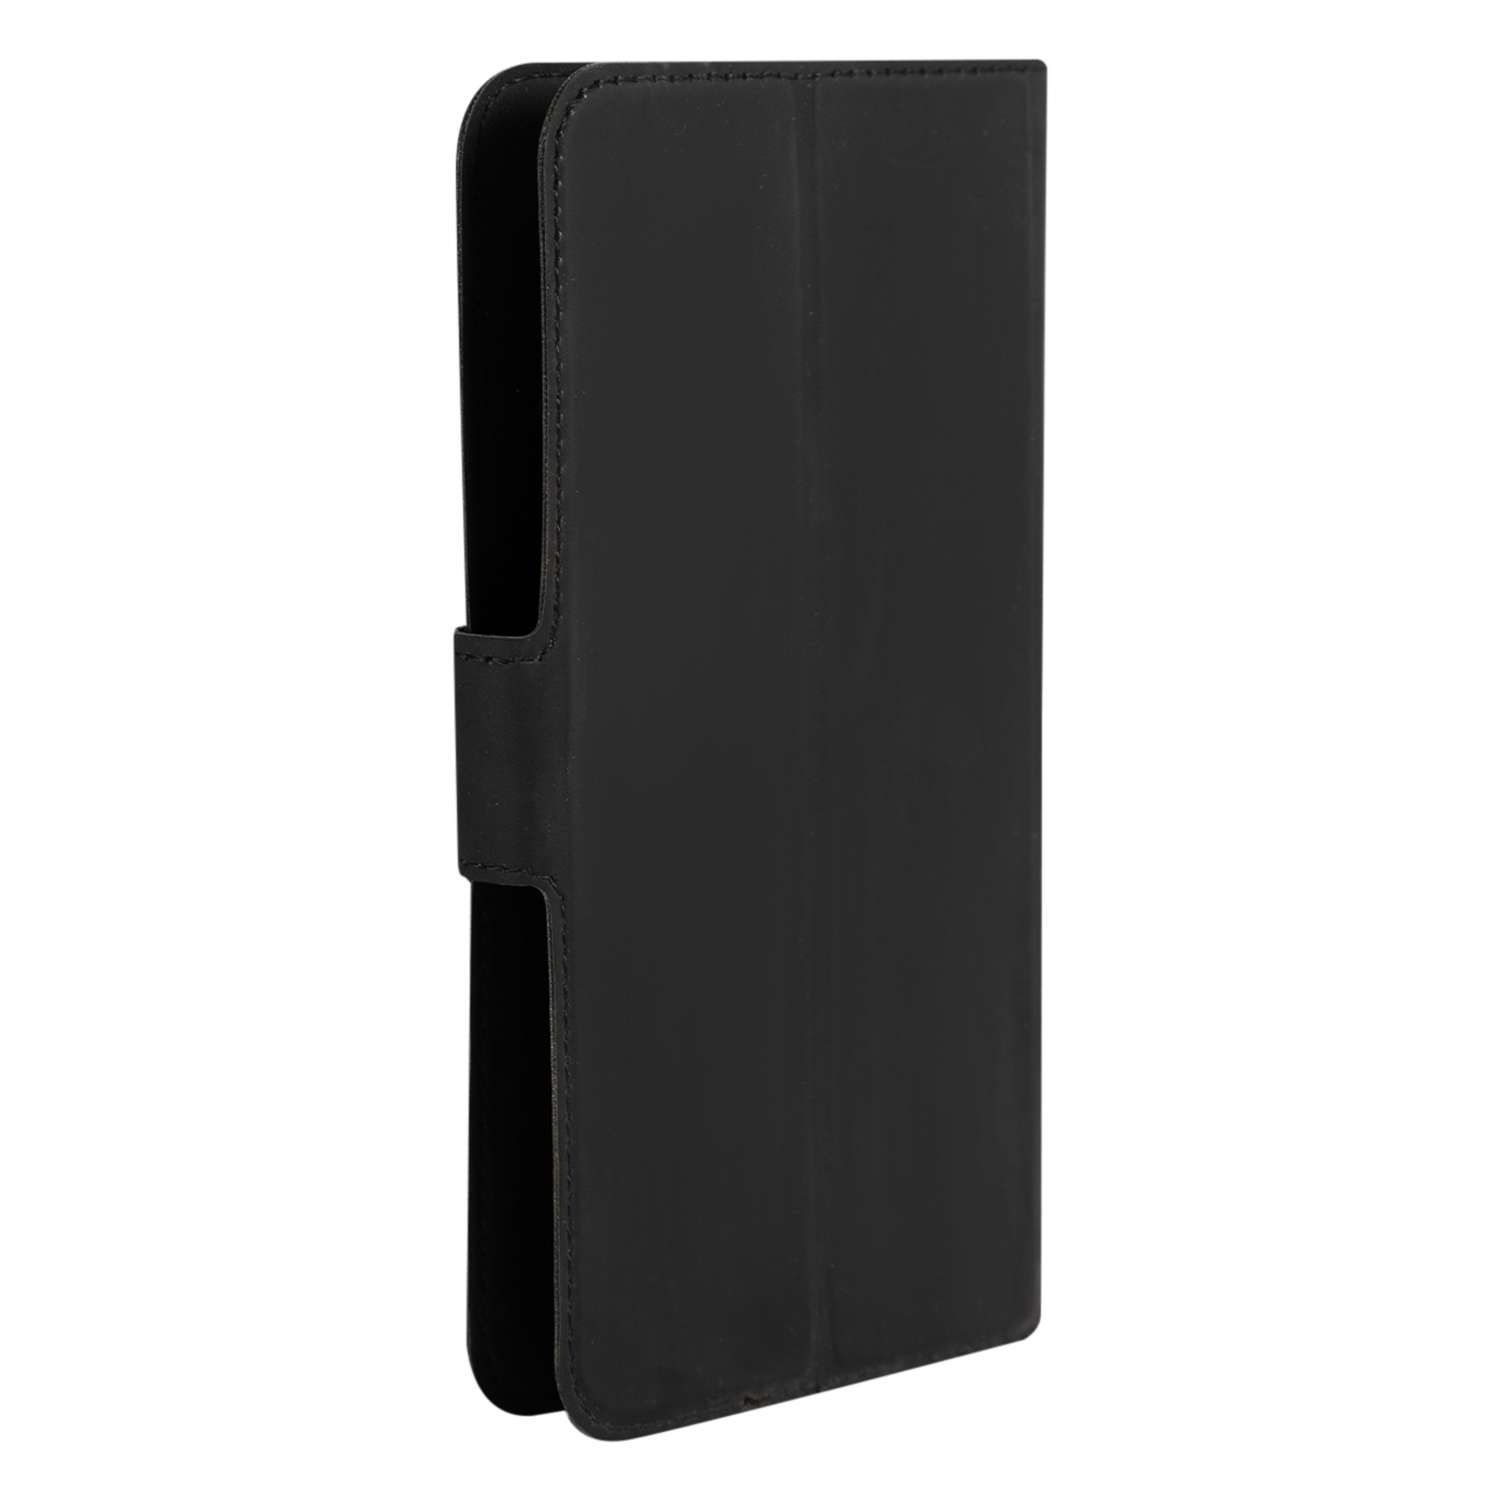 Чехол универсальный iBox UniMotion для телефонов 4.3-5 дюйма черный - фото 2